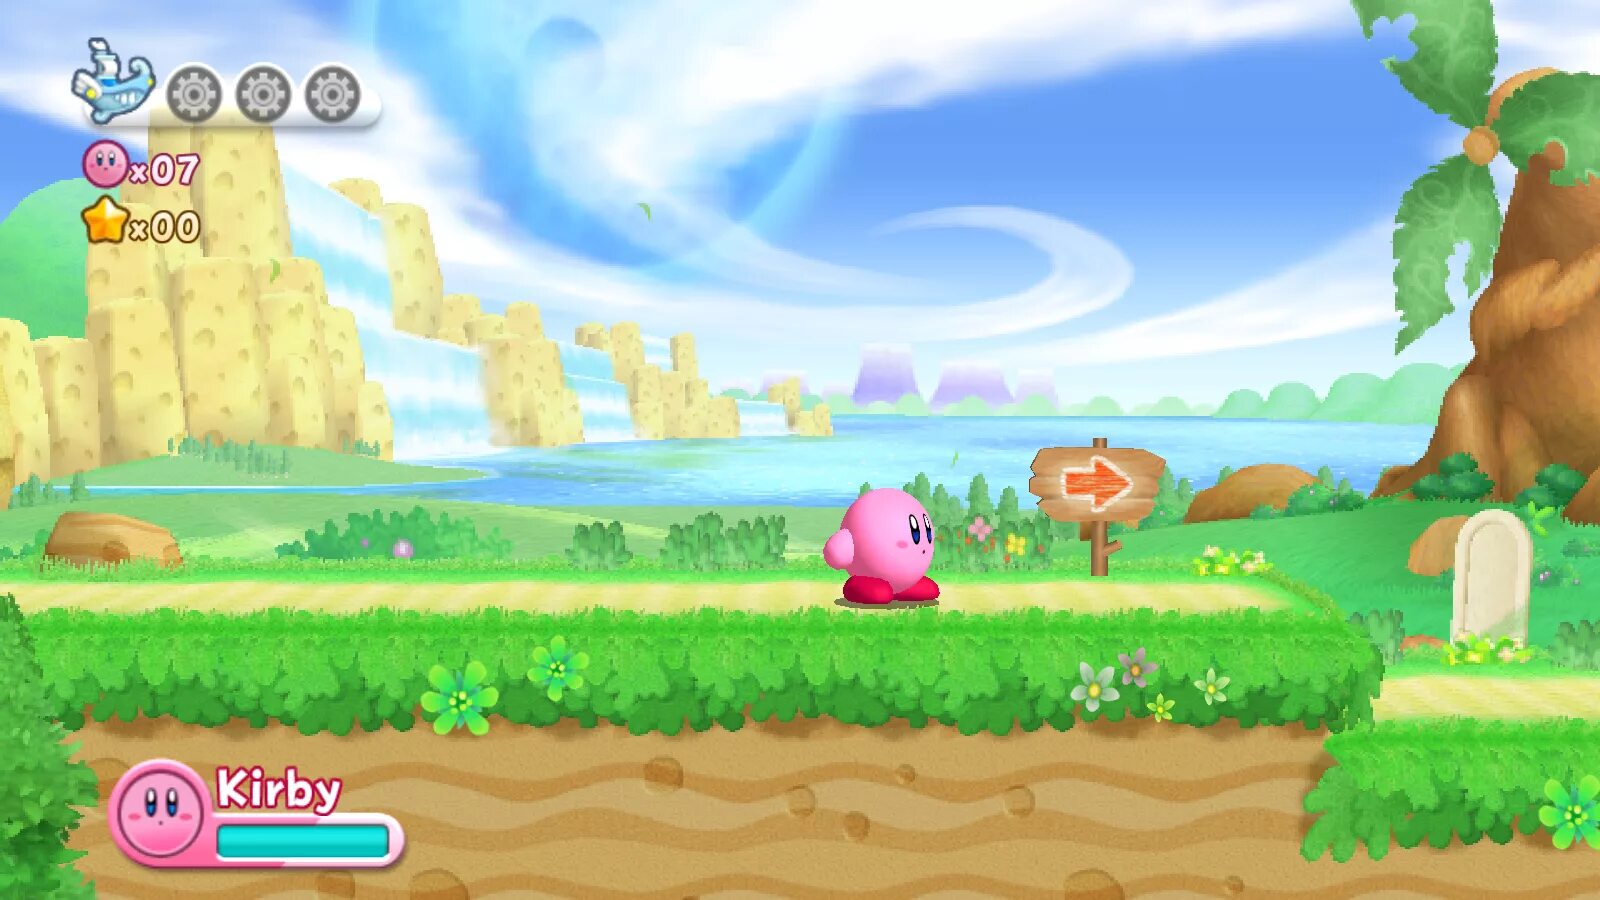 Кирби Return to Dreamland. Kirby's Return to Dreamland. Kirby Returns to Dreamland Wii. Kirby's Dream Land 4.